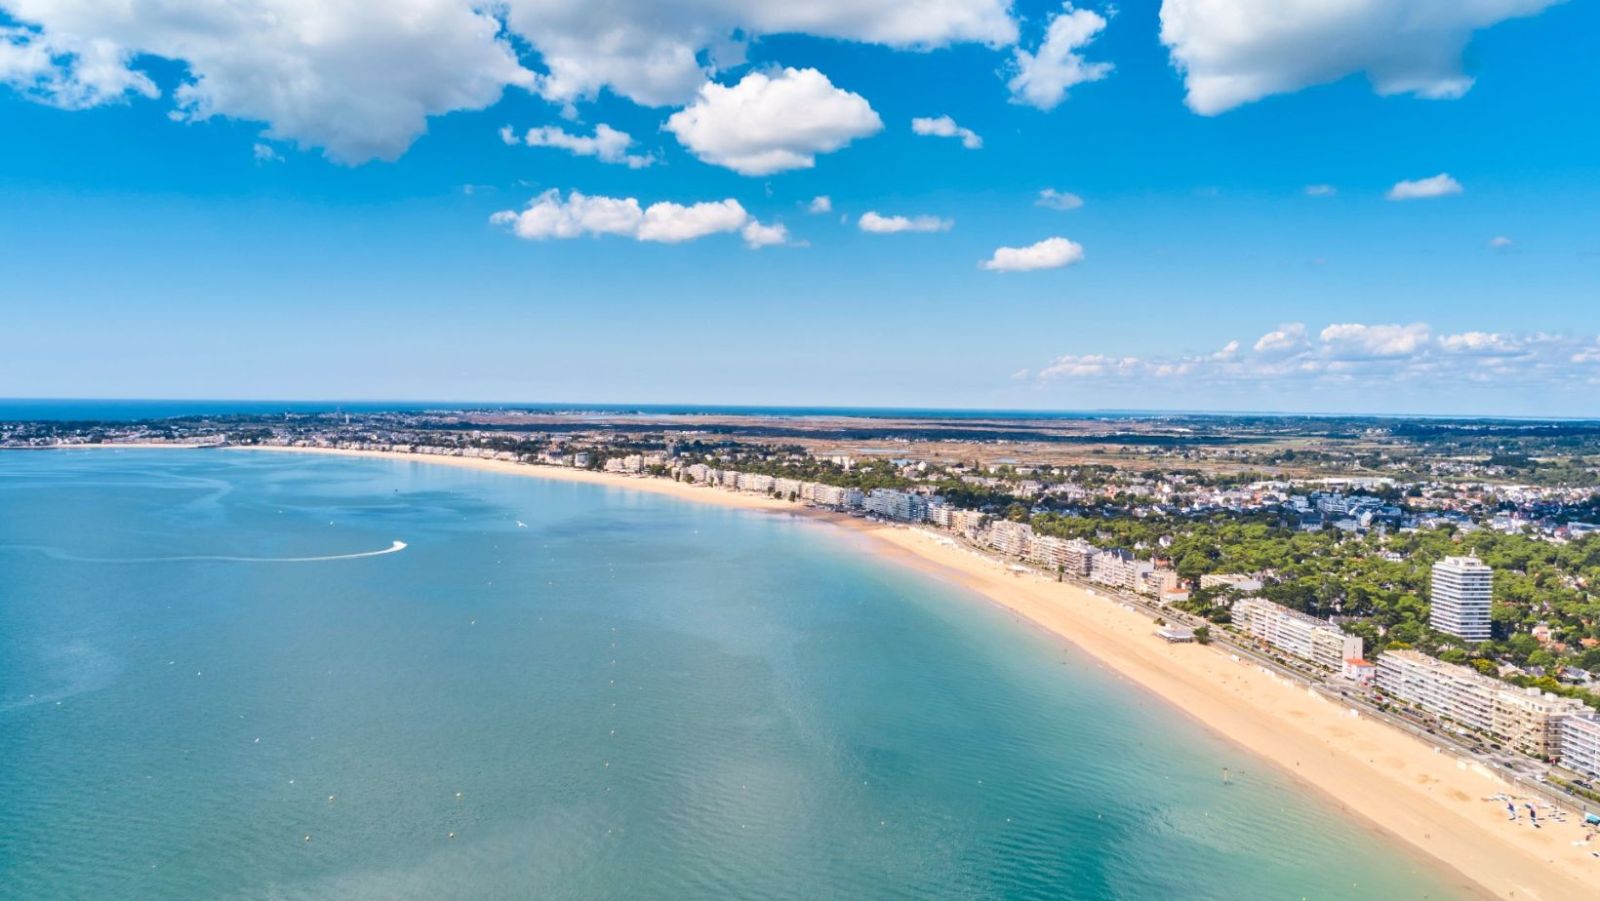 9 km de sable fin et 10 000 ans d'histoire géologique : une plage iconique française